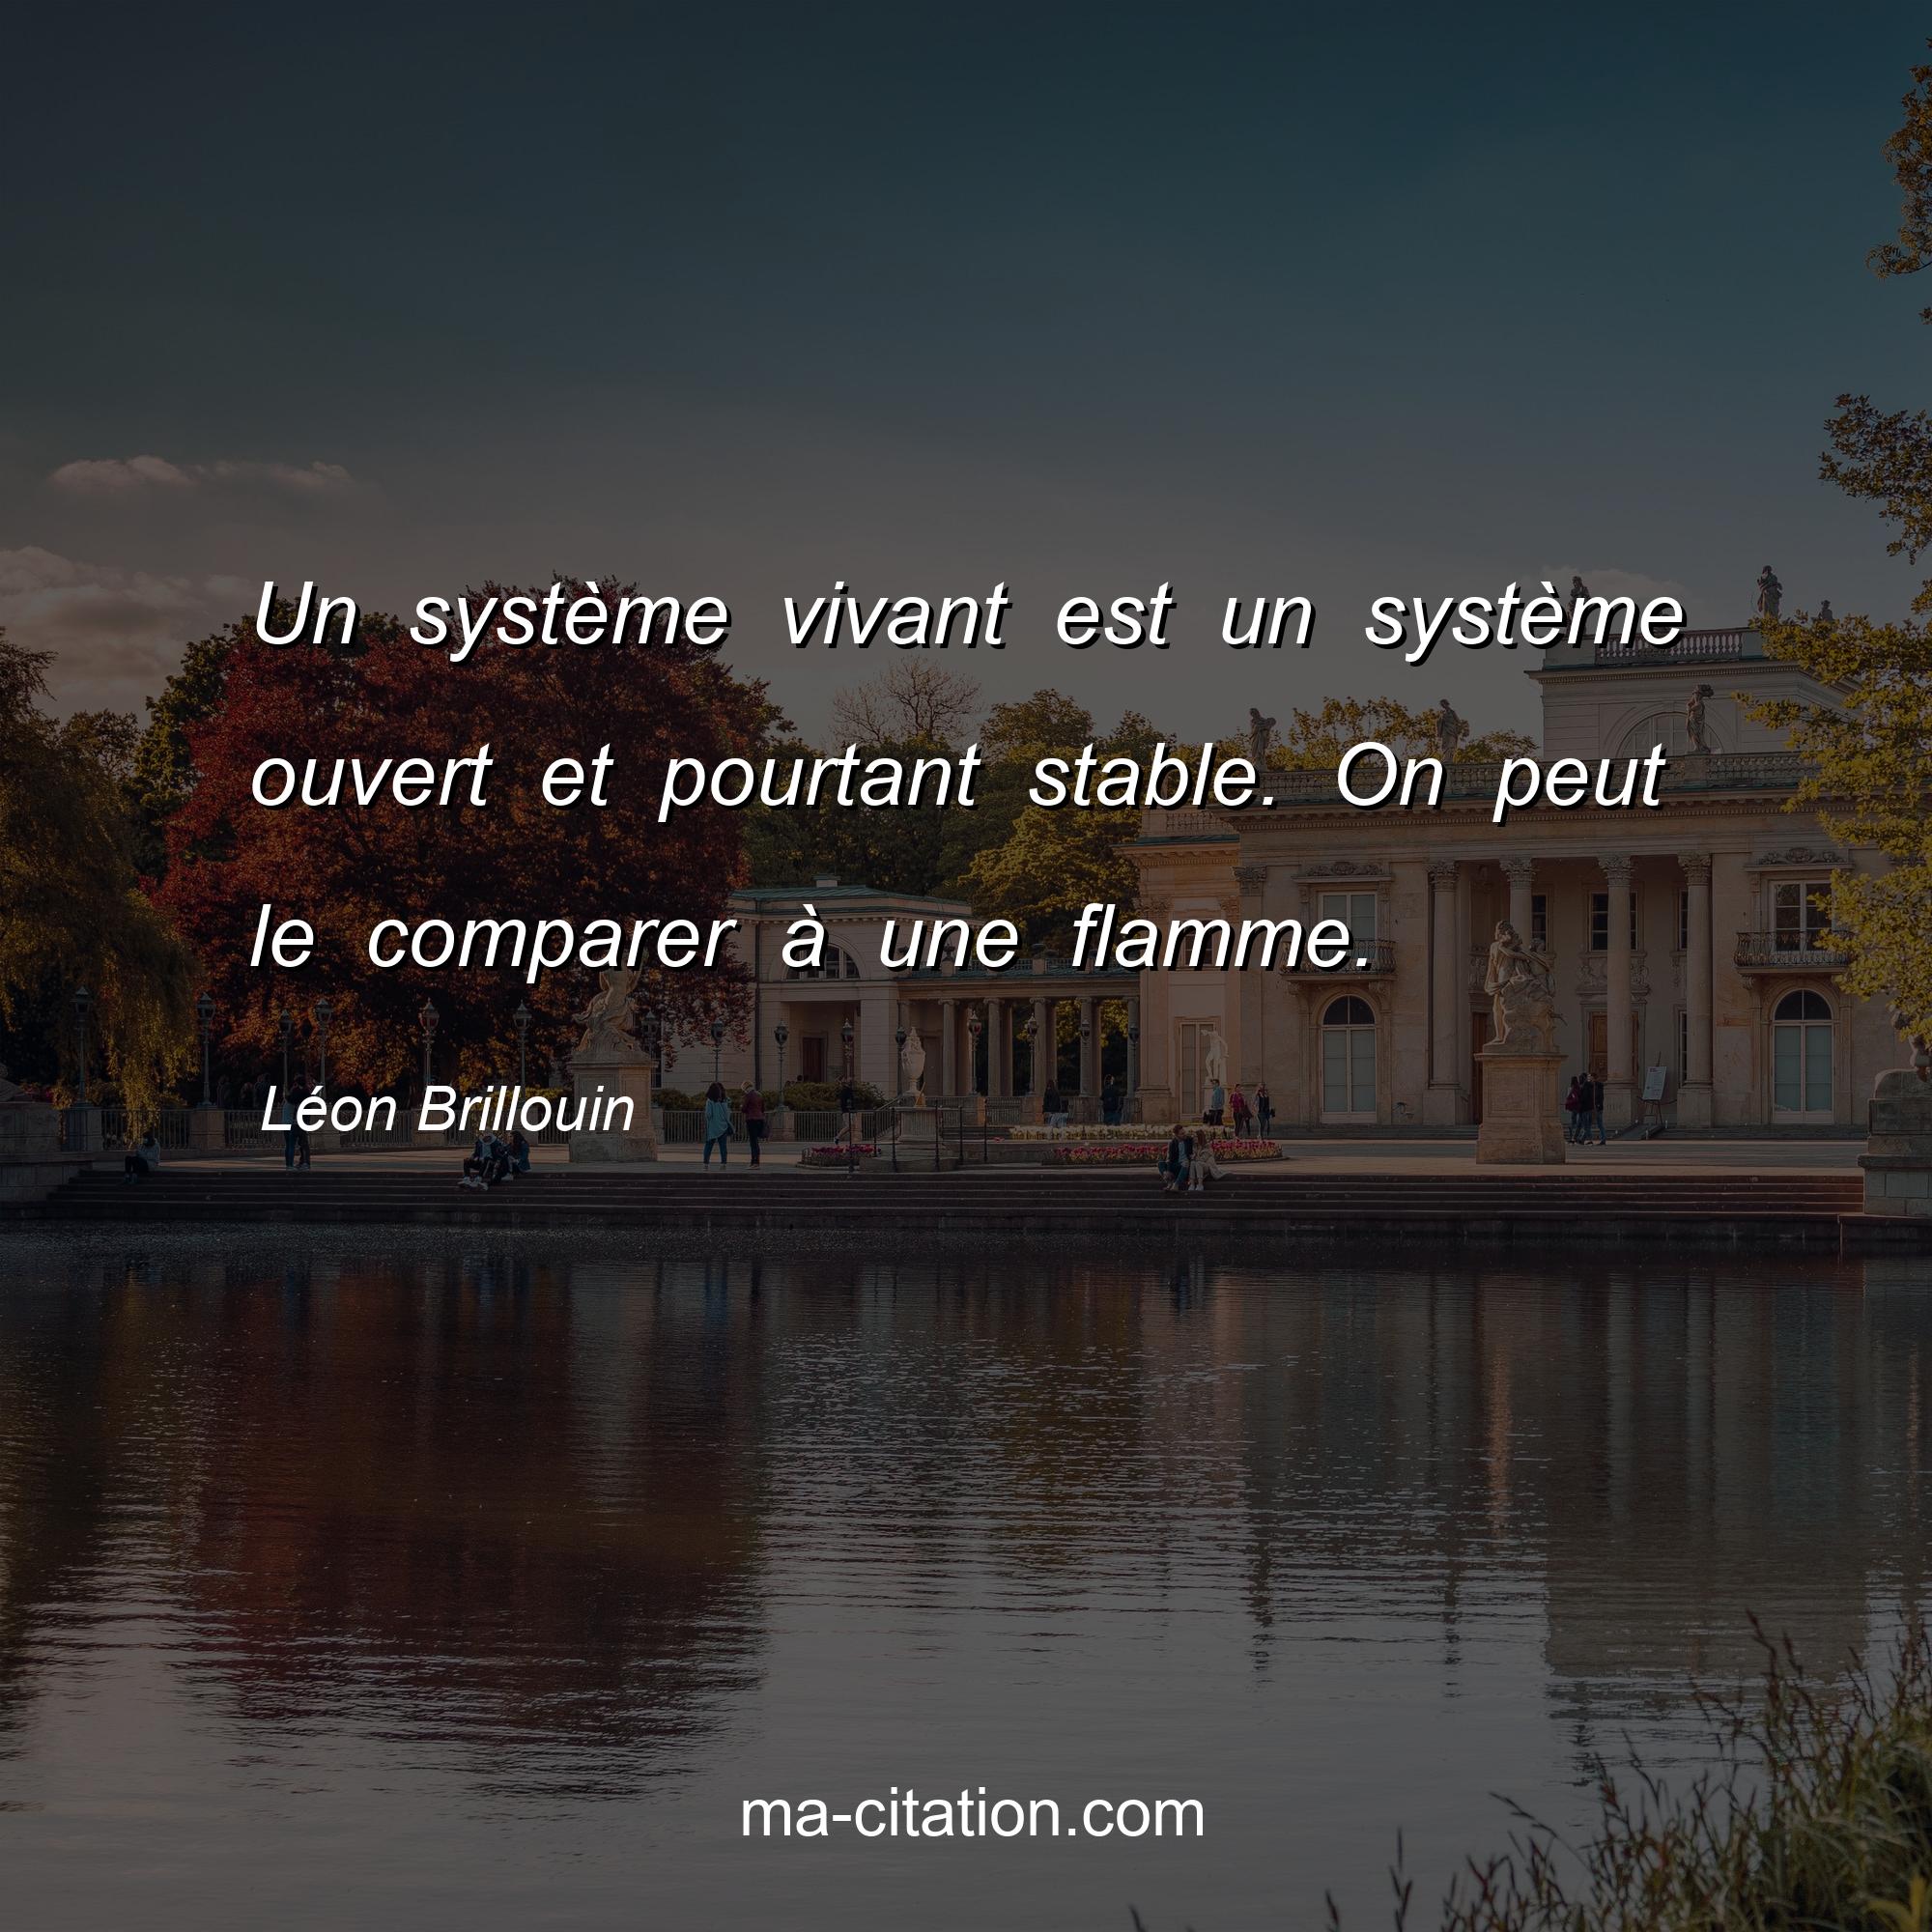 Léon Brillouin : Un système vivant est un système ouvert et pourtant stable. On peut le comparer à une flamme.